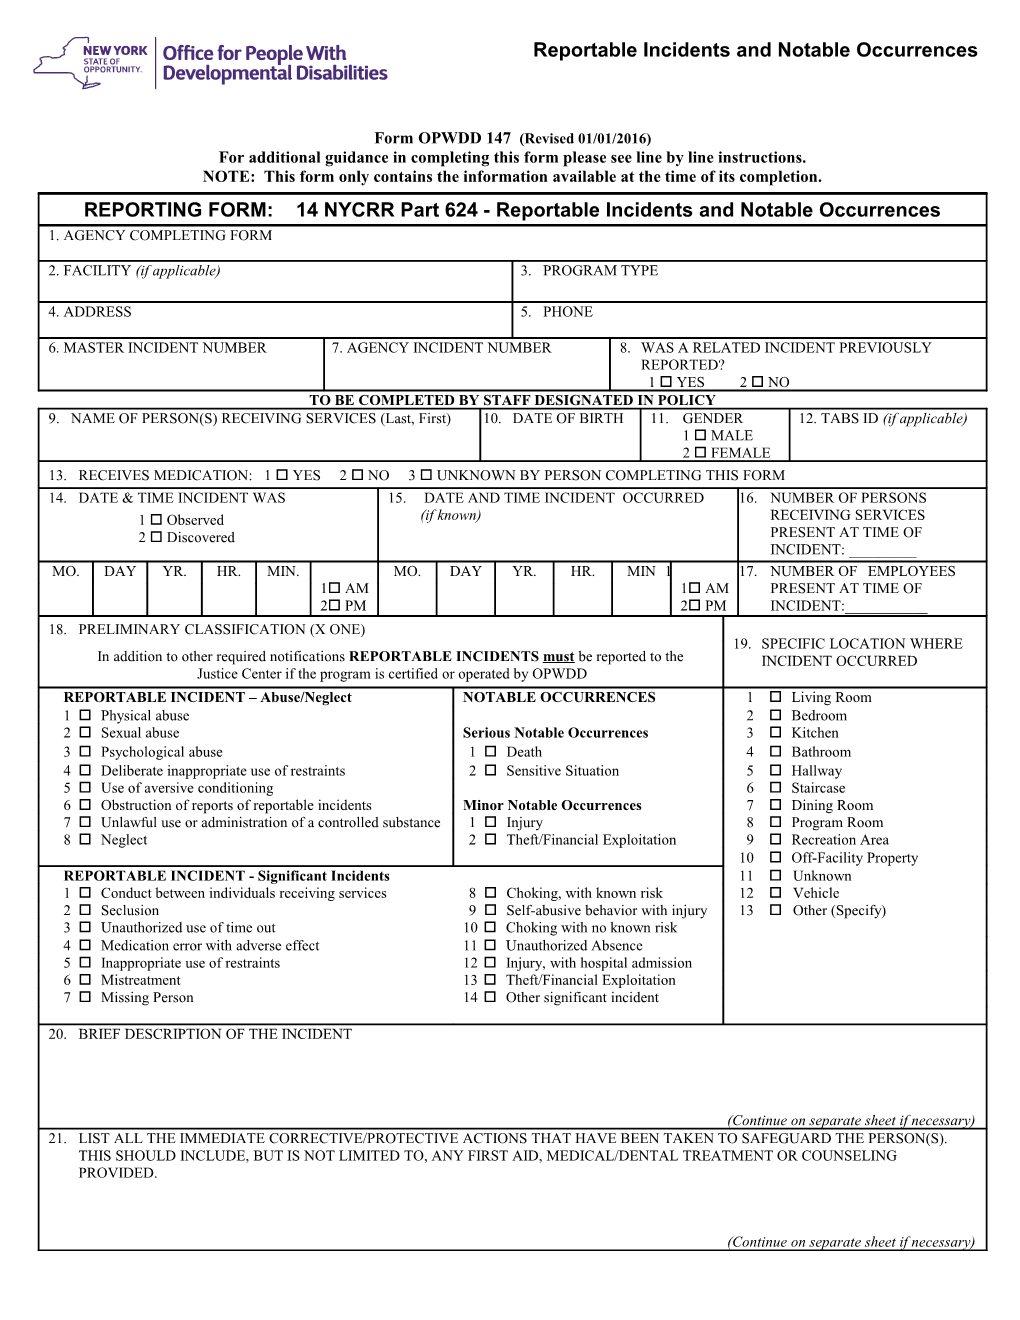 Form OMR 147 Revised 7/2010